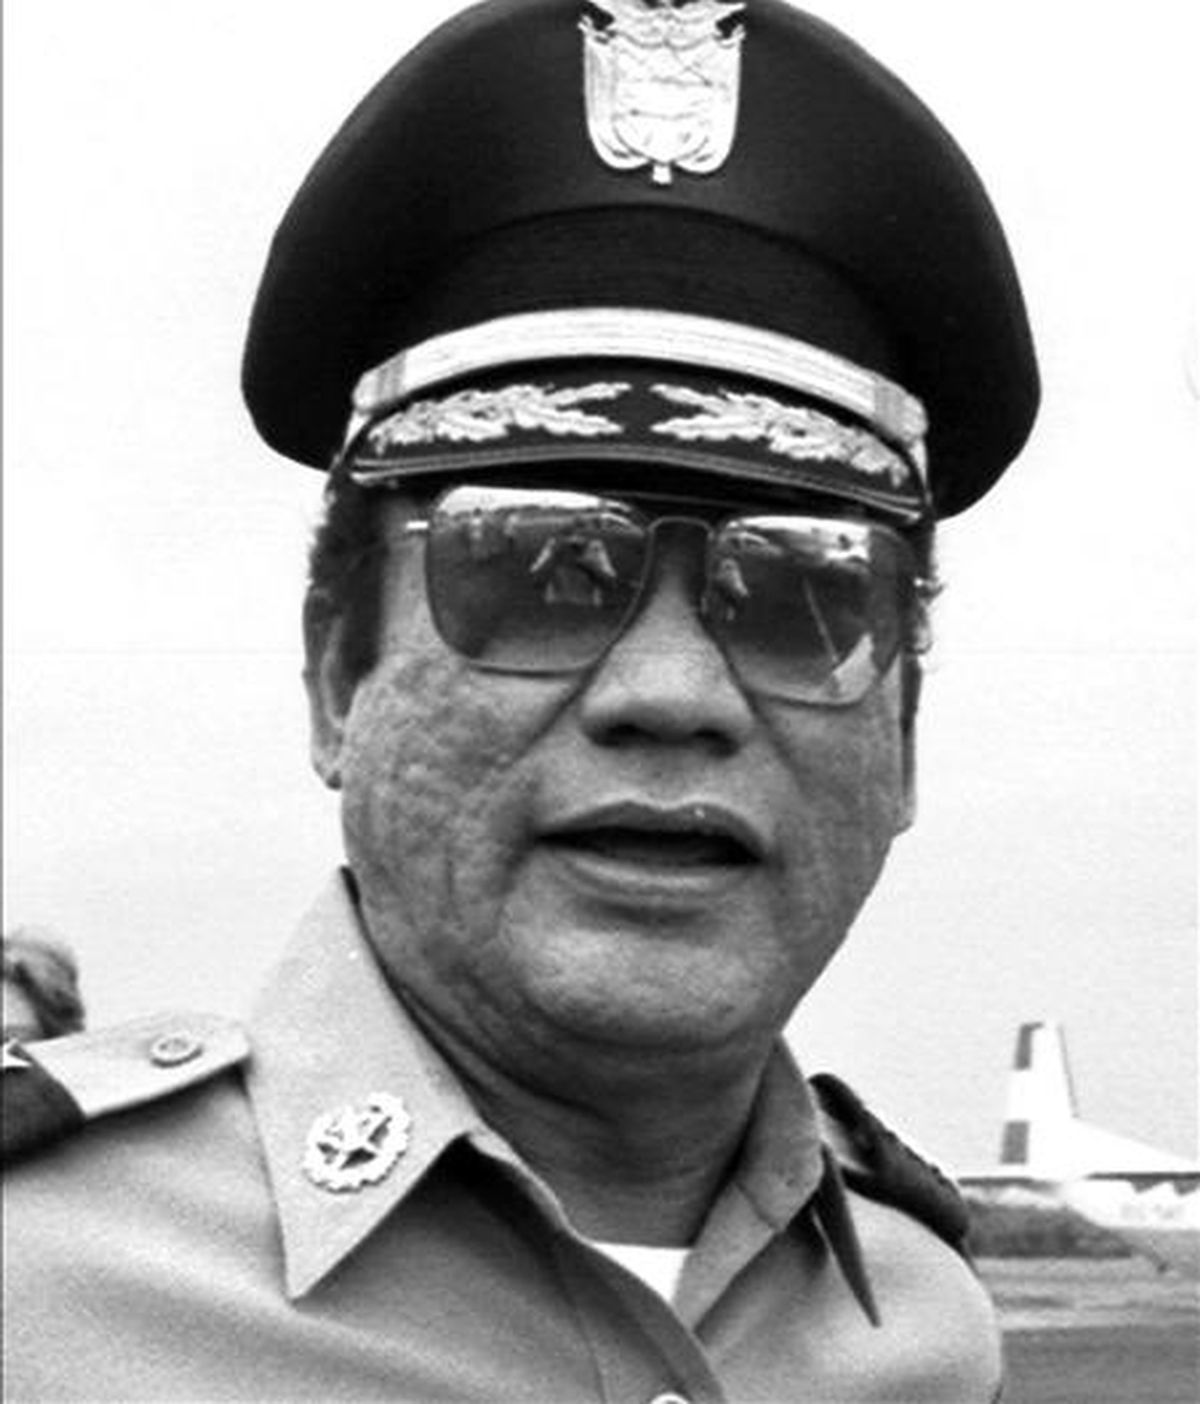 Imagen tomada en 1985 del ex general panameño Manuel Antonio Noriega, quien puede ser extraditado a Francia, país que lo solicita por lavado de dinero, según un tribunal de Estados Unidos. EFE/Archivo